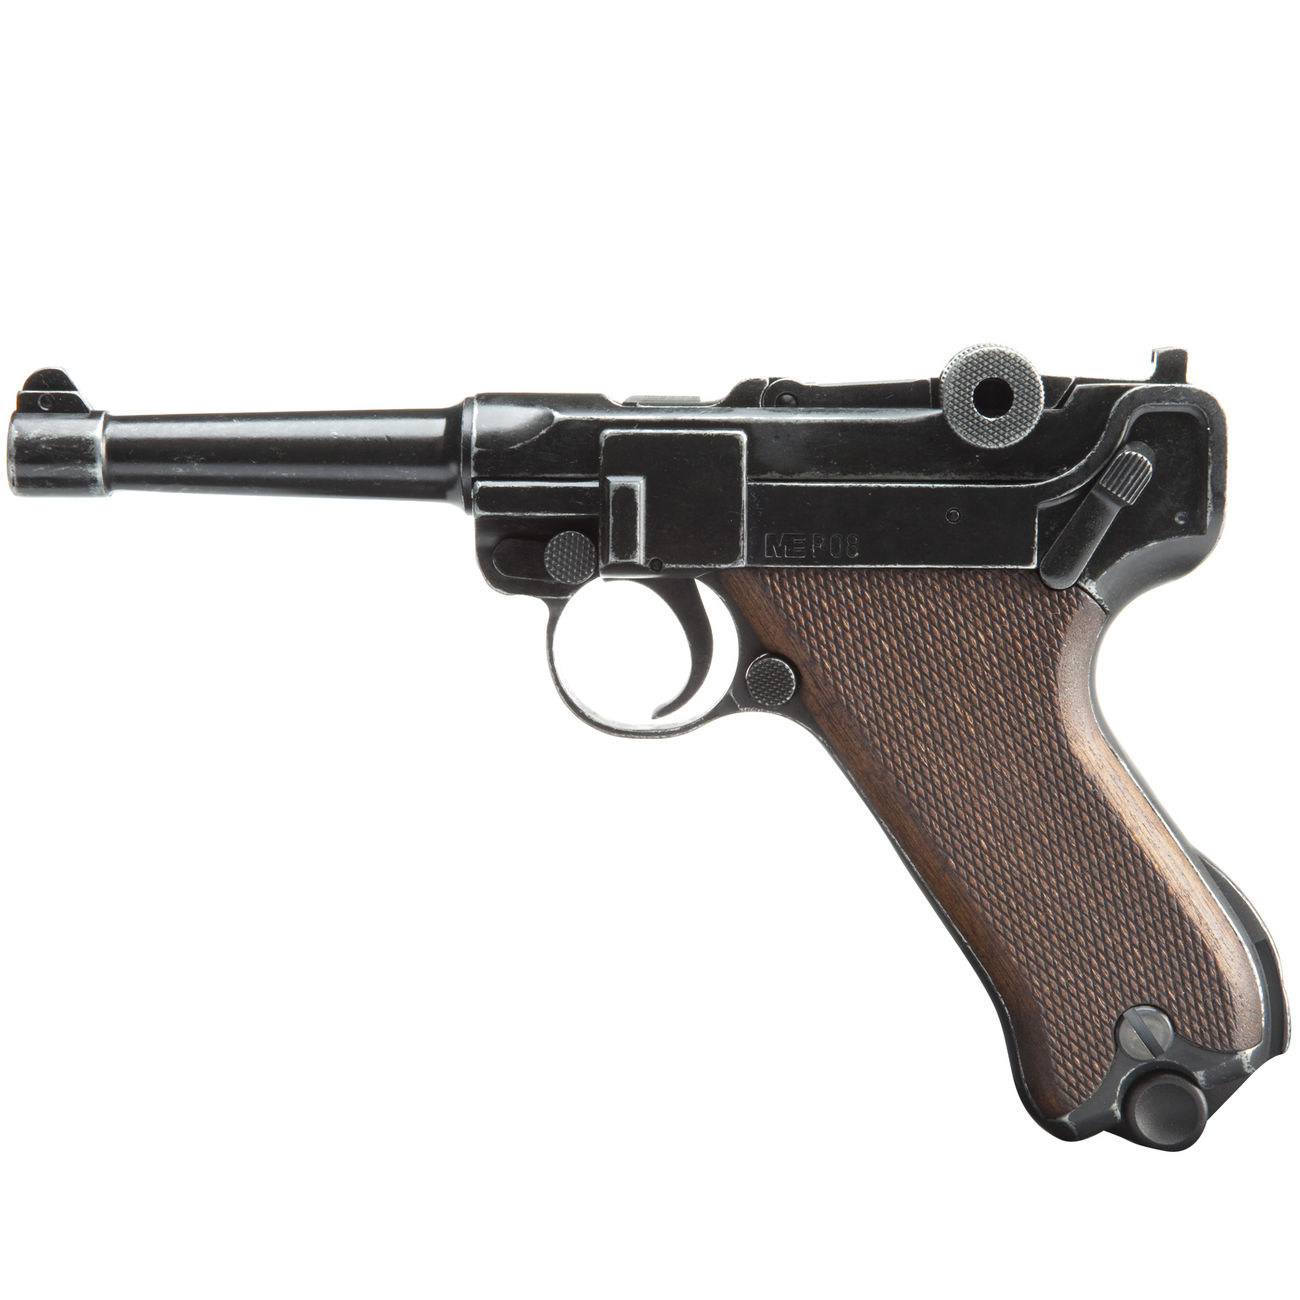 ME Modell P08 Parabellum Schreckschuss Pistole 9 mm P.A.K. antik finish WWII